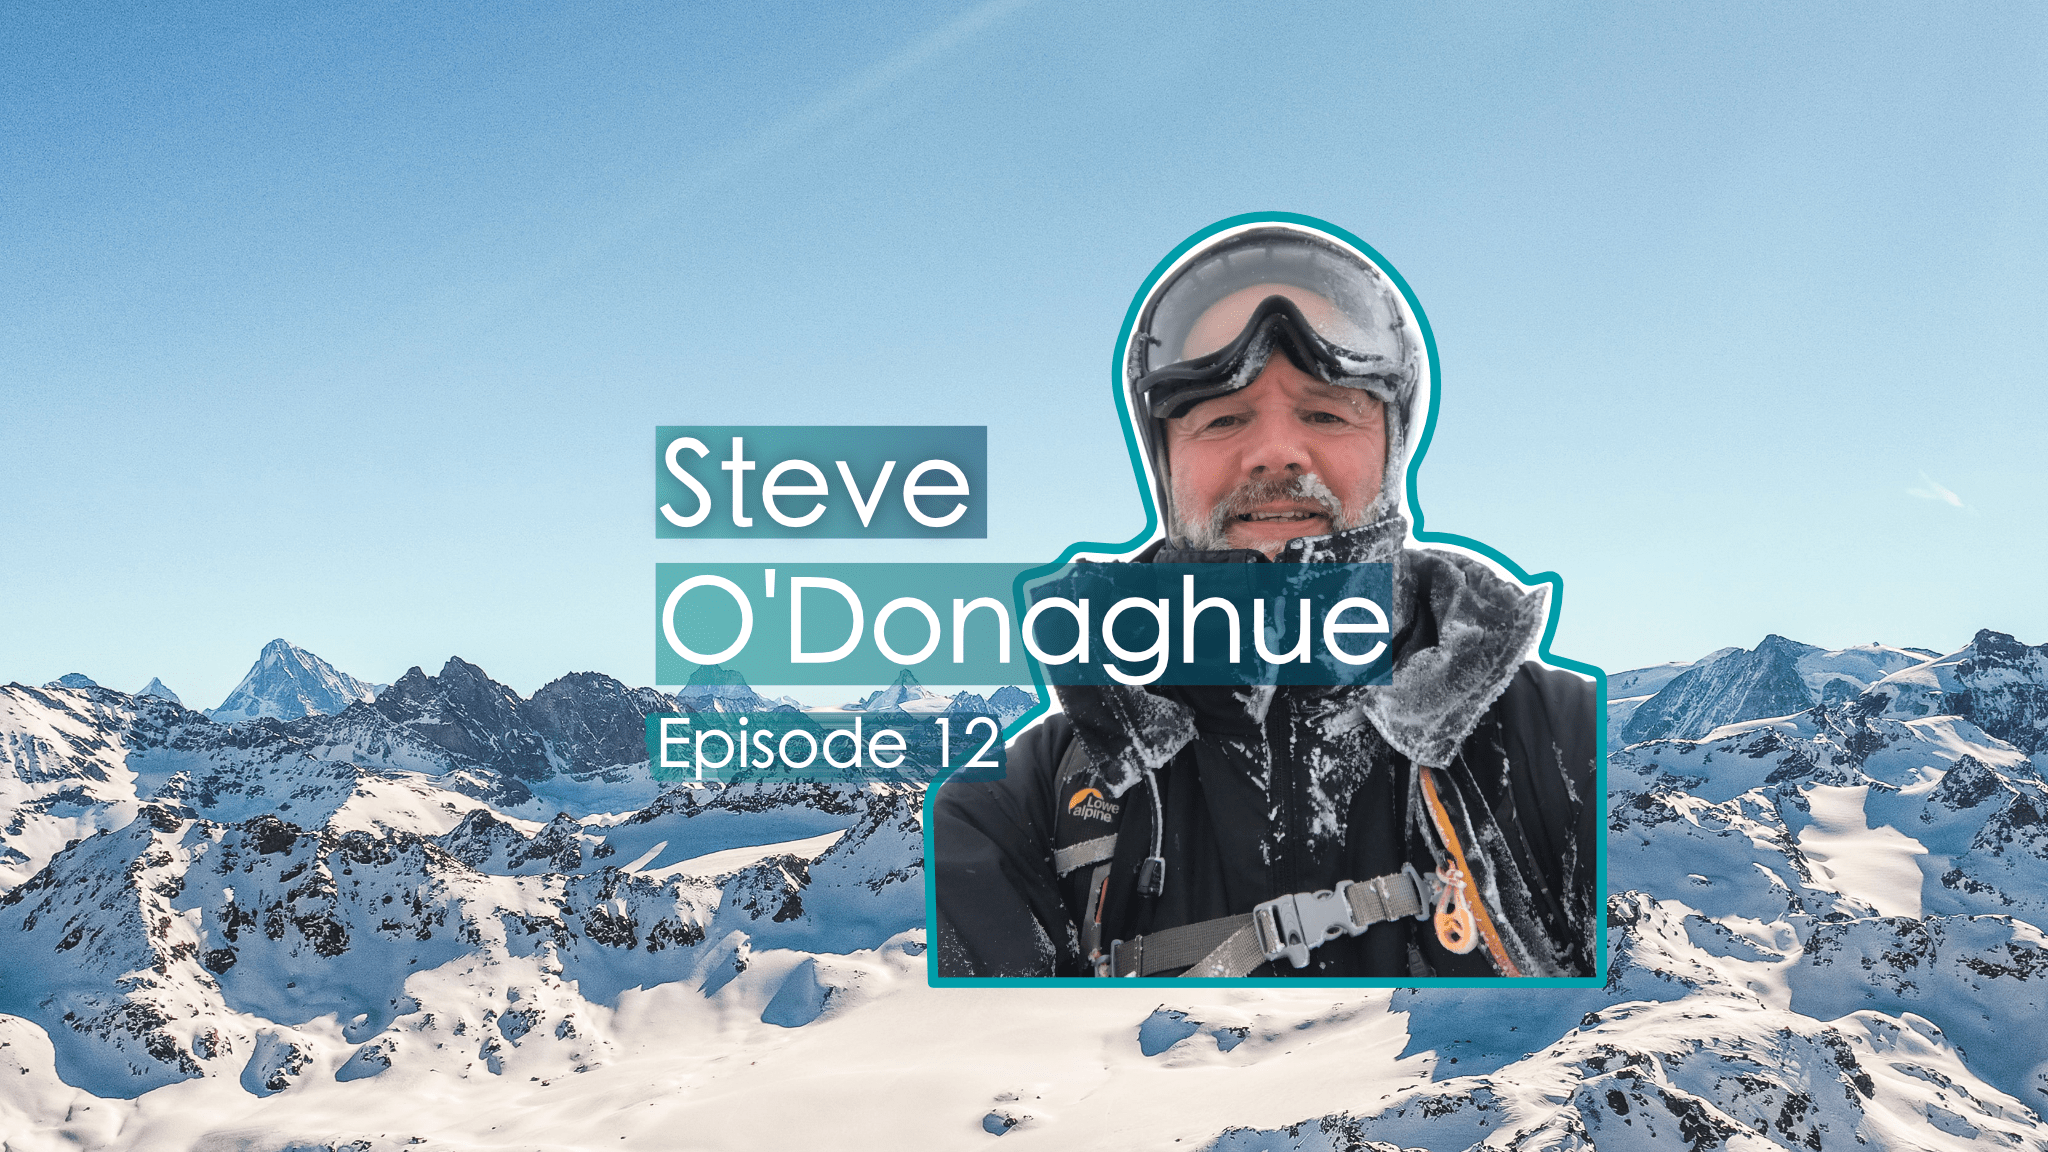 Earth's Edge Podcast Steve O'Donoghue